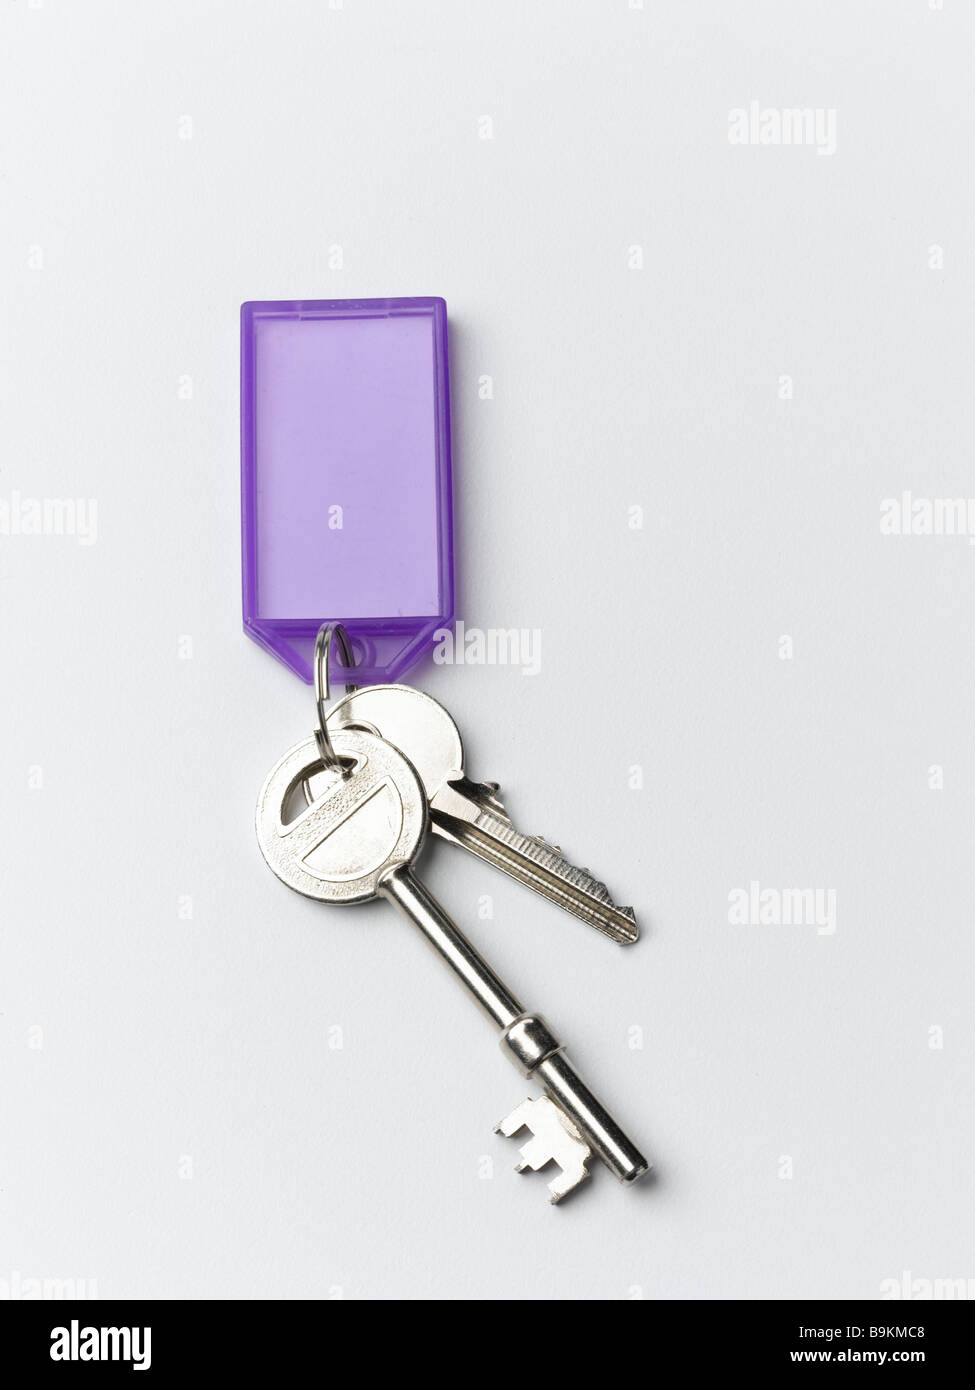 house keys Stock Photo